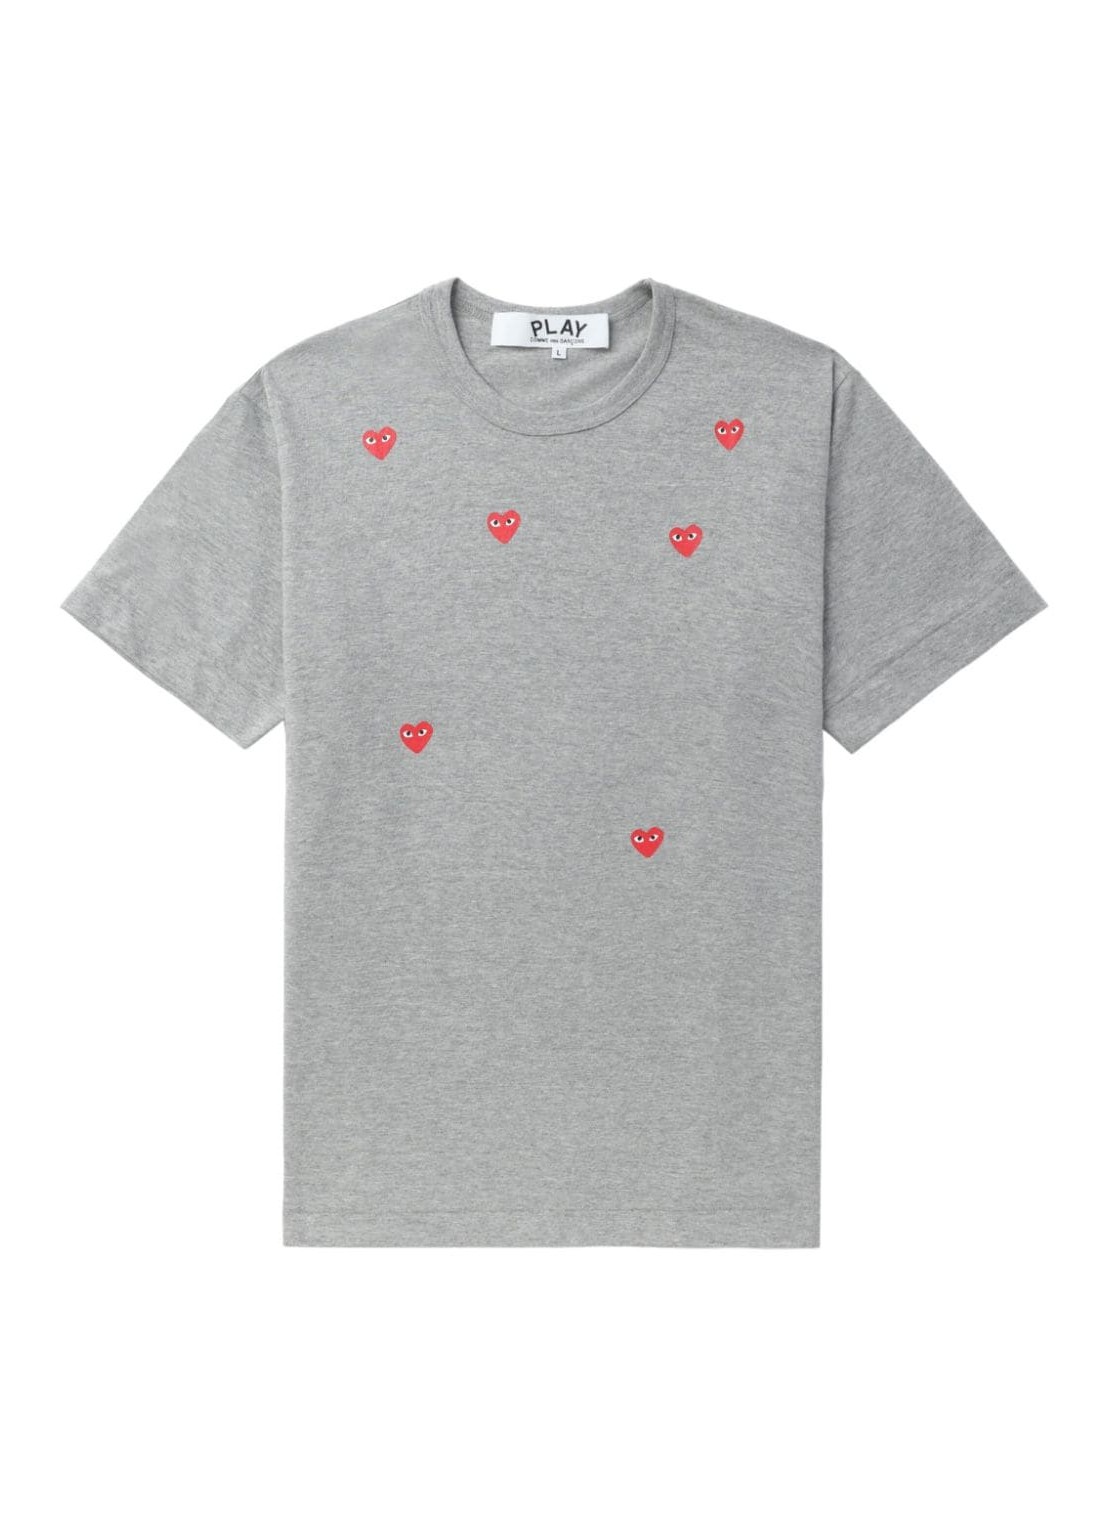 Camiseta comme des garcons t-shirt manmany heart short sleeve t-shirt - axt338051 grey talla XXL
 